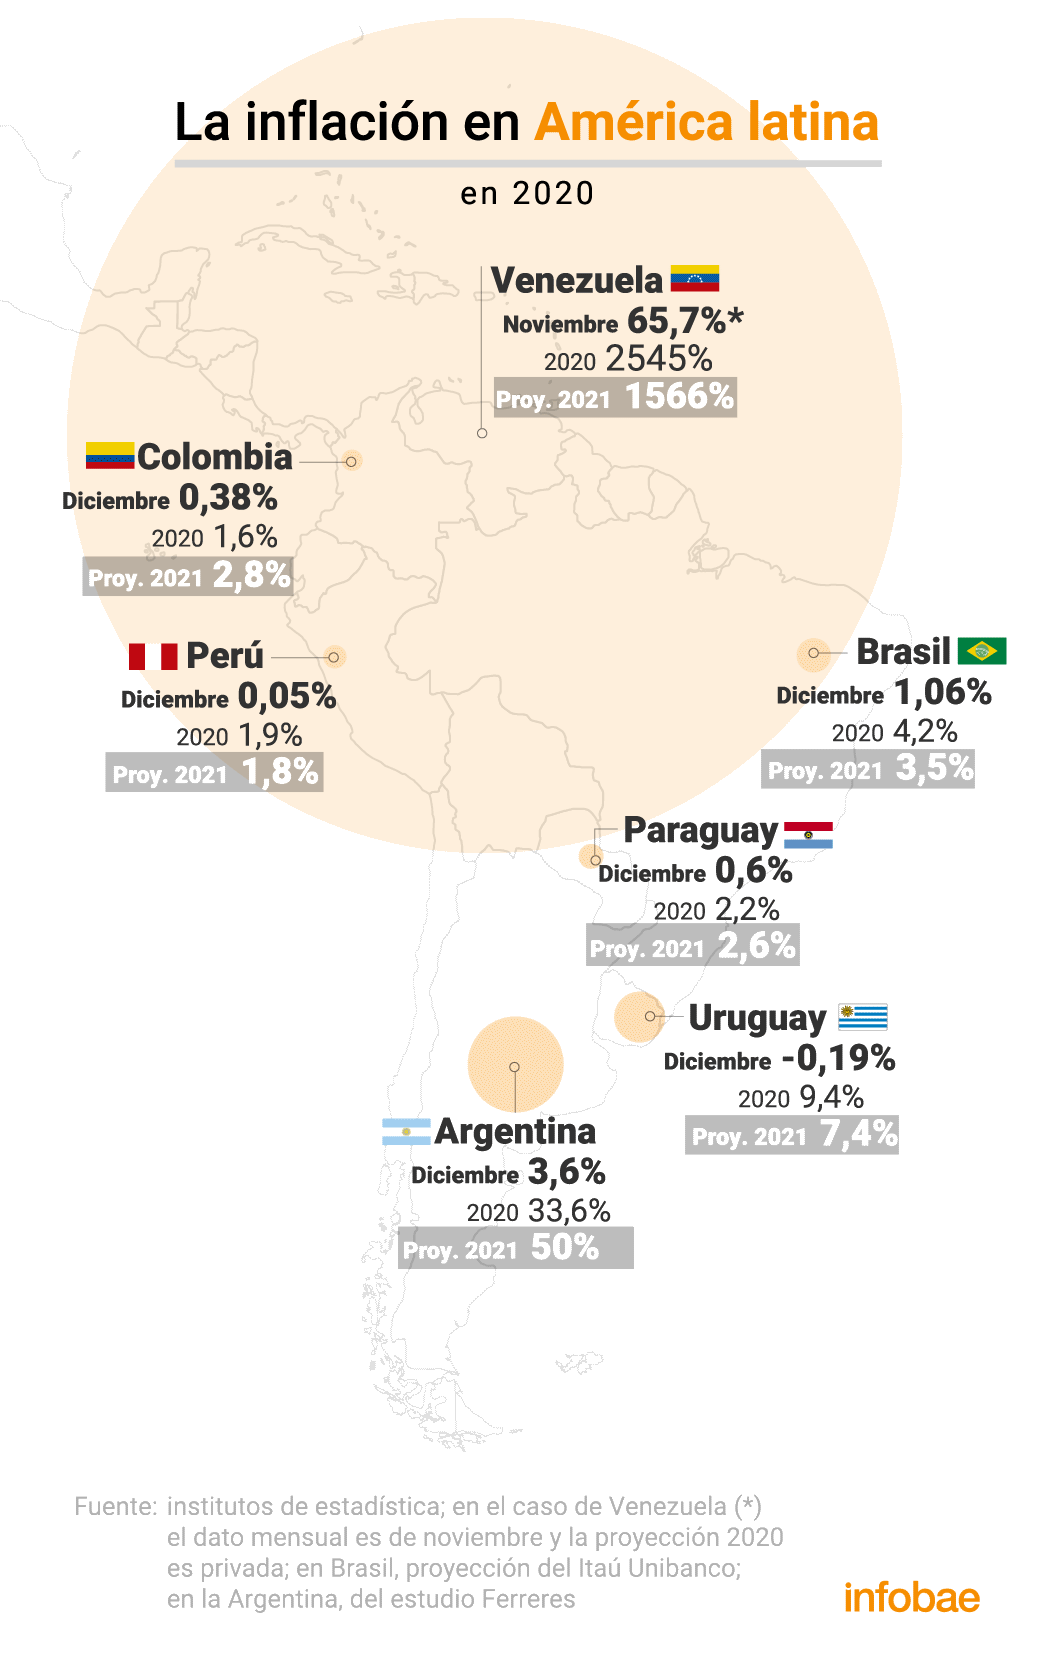 La inflación en un grupo de países de América latina en diciembre, el cierre del 2020 y la proyección para este año
Infografía de Marcelo Regalado